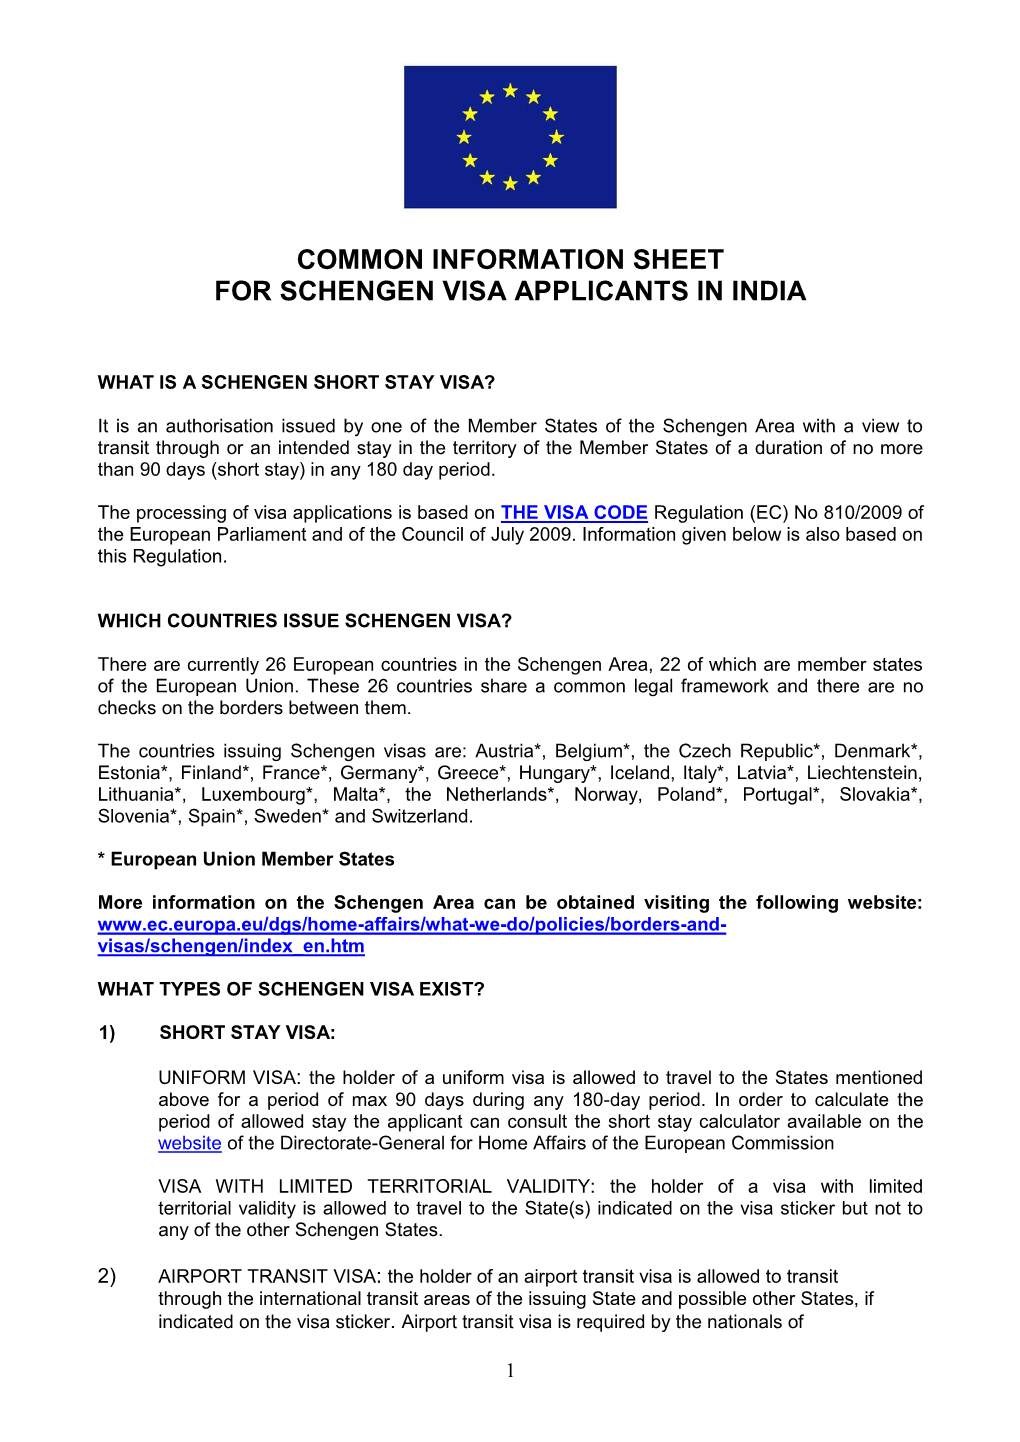 Common Information Sheet for Schengen Visa Applicants in India